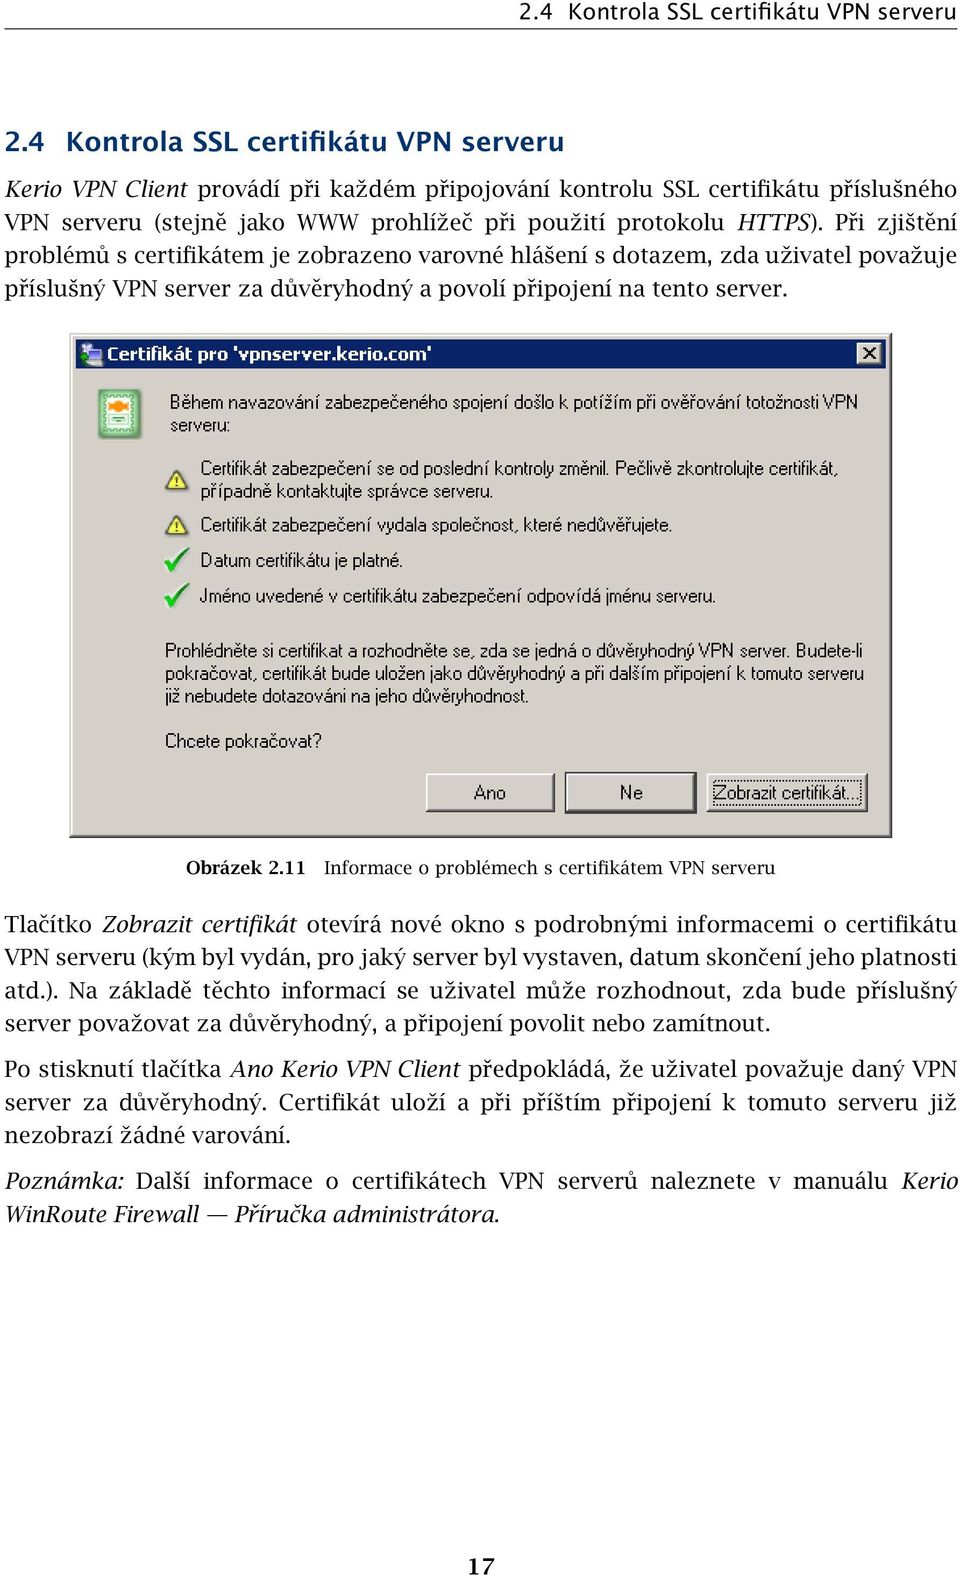 Při zjištění problémů s certifikátem je zobrazeno varovné hlášení s dotazem, zda uživatel považuje příslušný VPN server za důvěryhodný a povolí připojení na tento server. Obrázek 2.